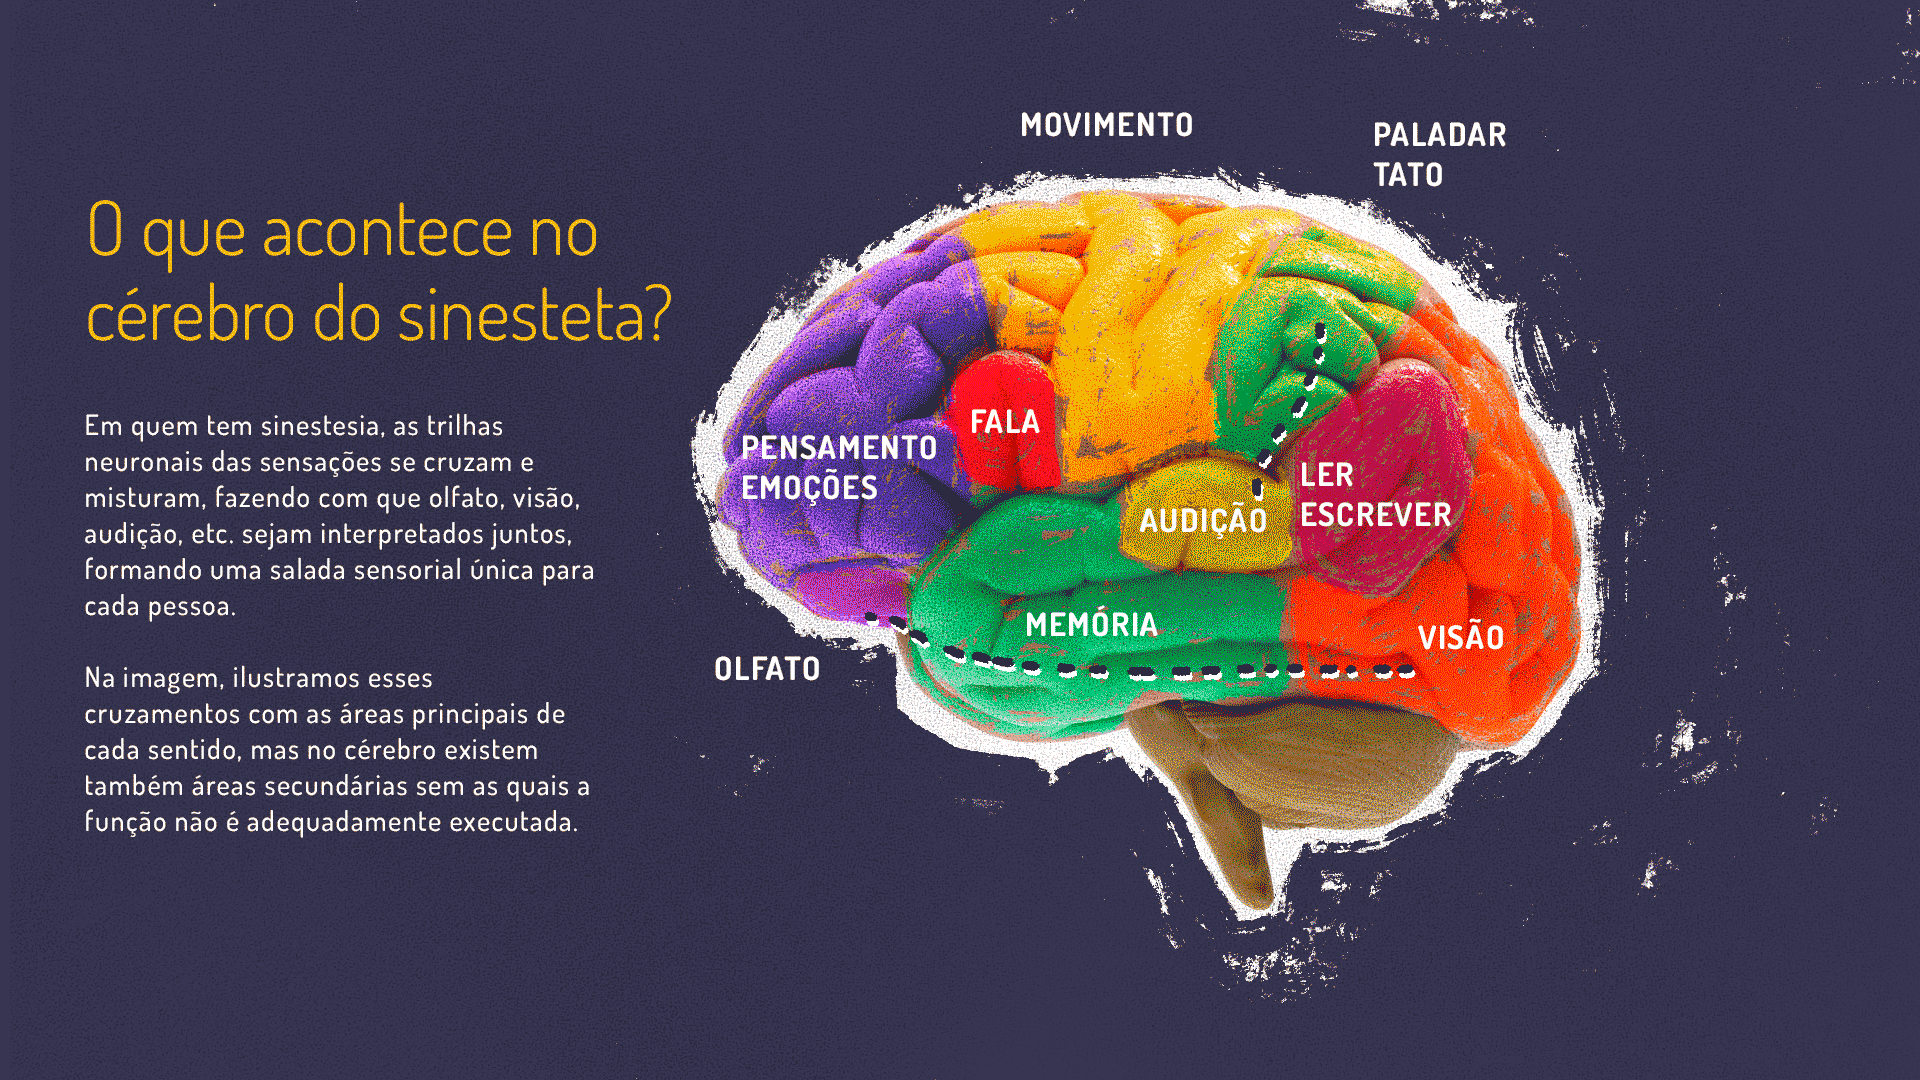 Titulo : O que acontece no cerebro do sinesteta? Ai lado um cérebro mudando de cores